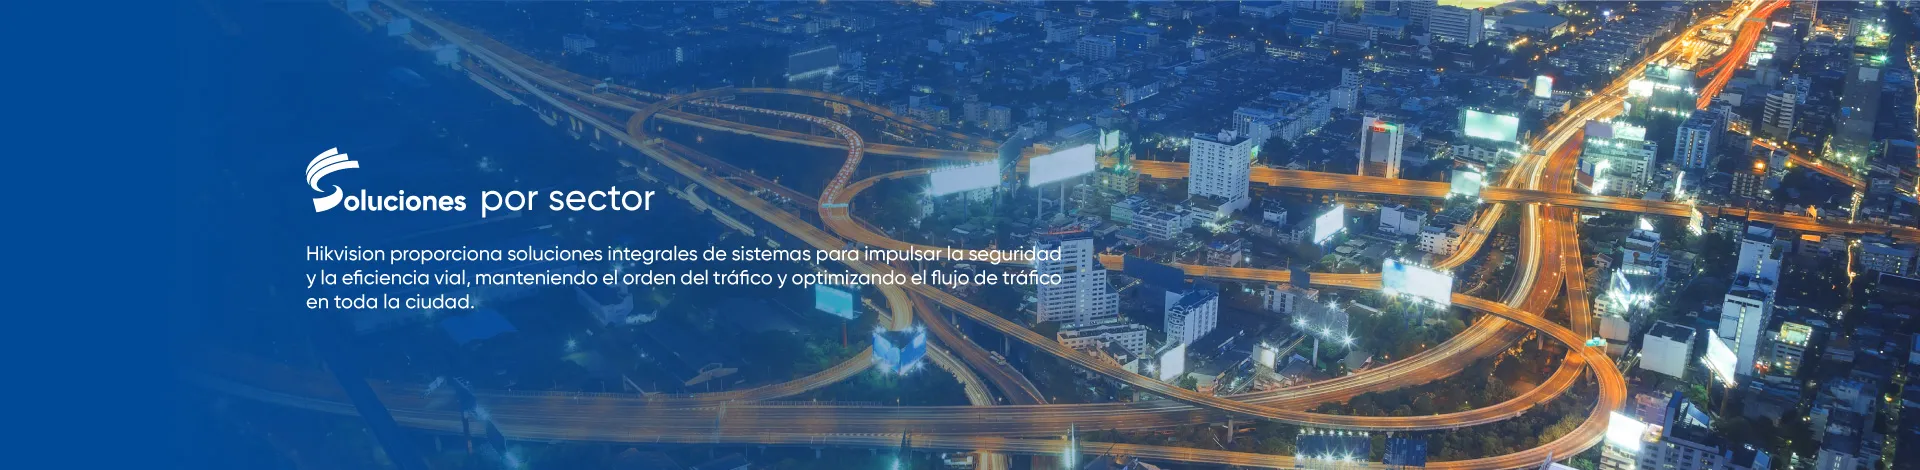 Hikvision proporciona soluciones integrales de sistemas para impulsar la seguridad y la eficiencia vial, manteniendo el orden del tráfico y optimizando el flujo de tráfico en toda la ciudad.